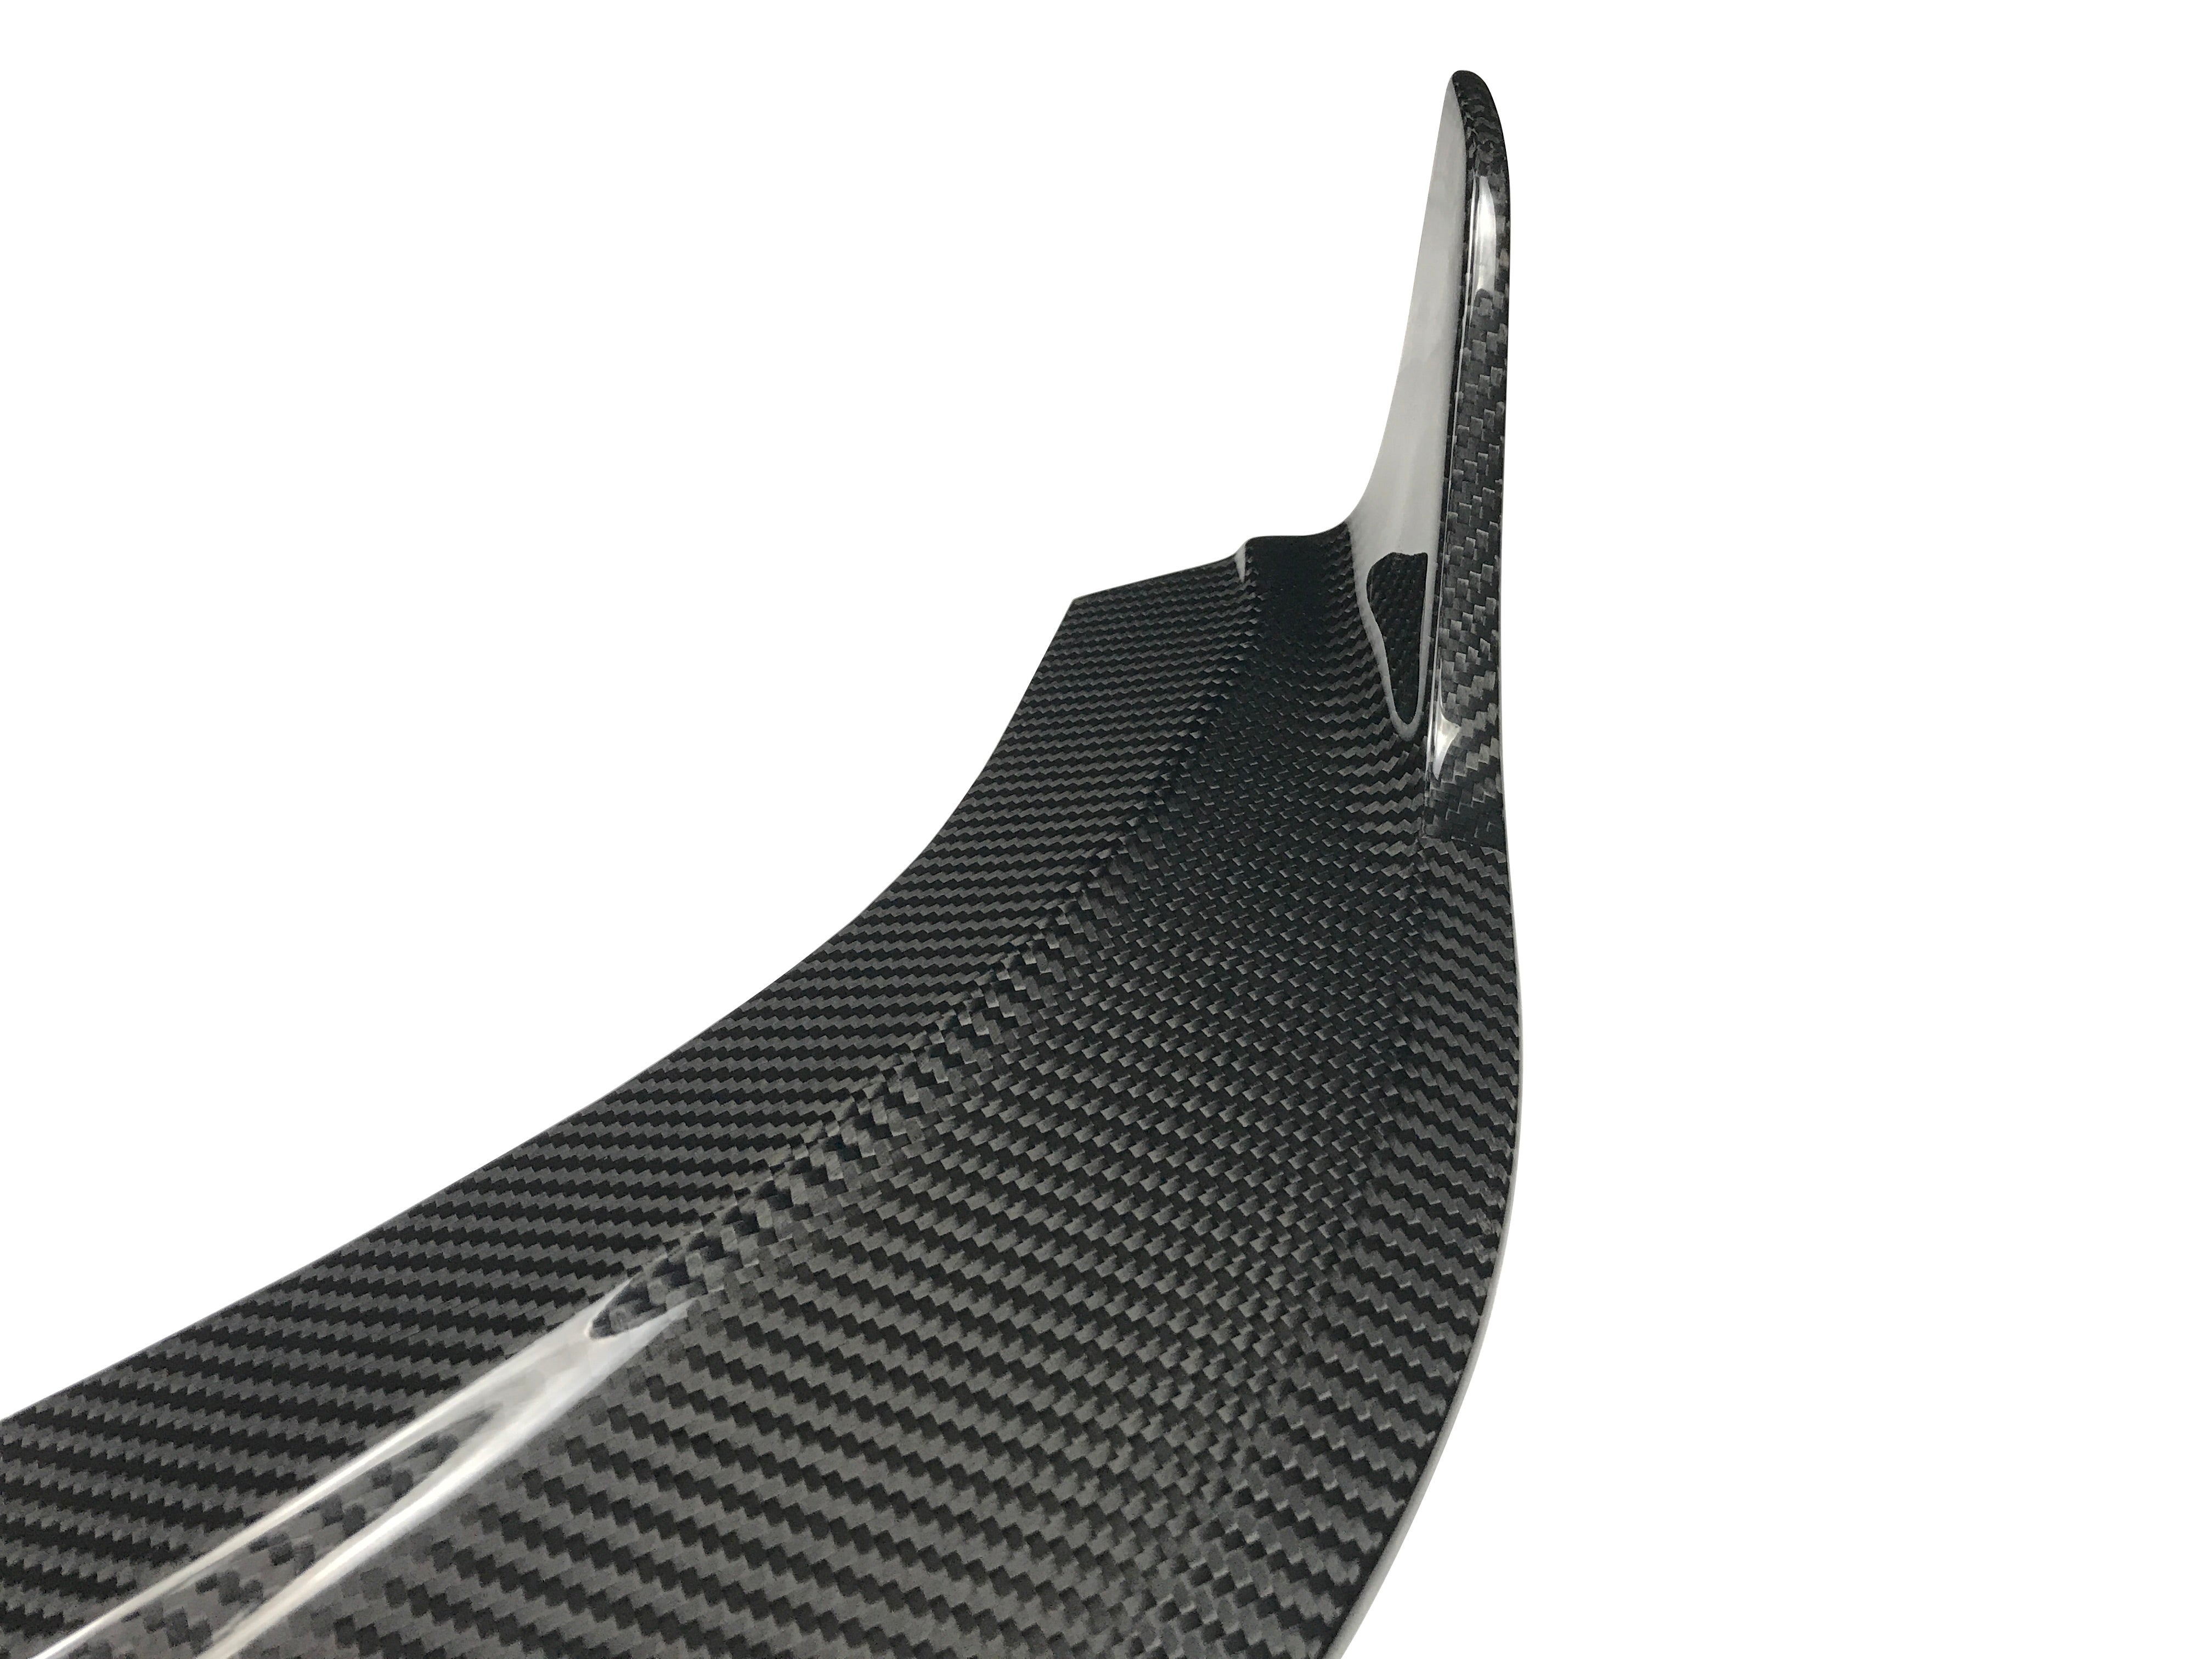 SD Carbon Carbon Fiber Front Lip For Audi A4 S-Line & S4 2019-ON B9 B9.5